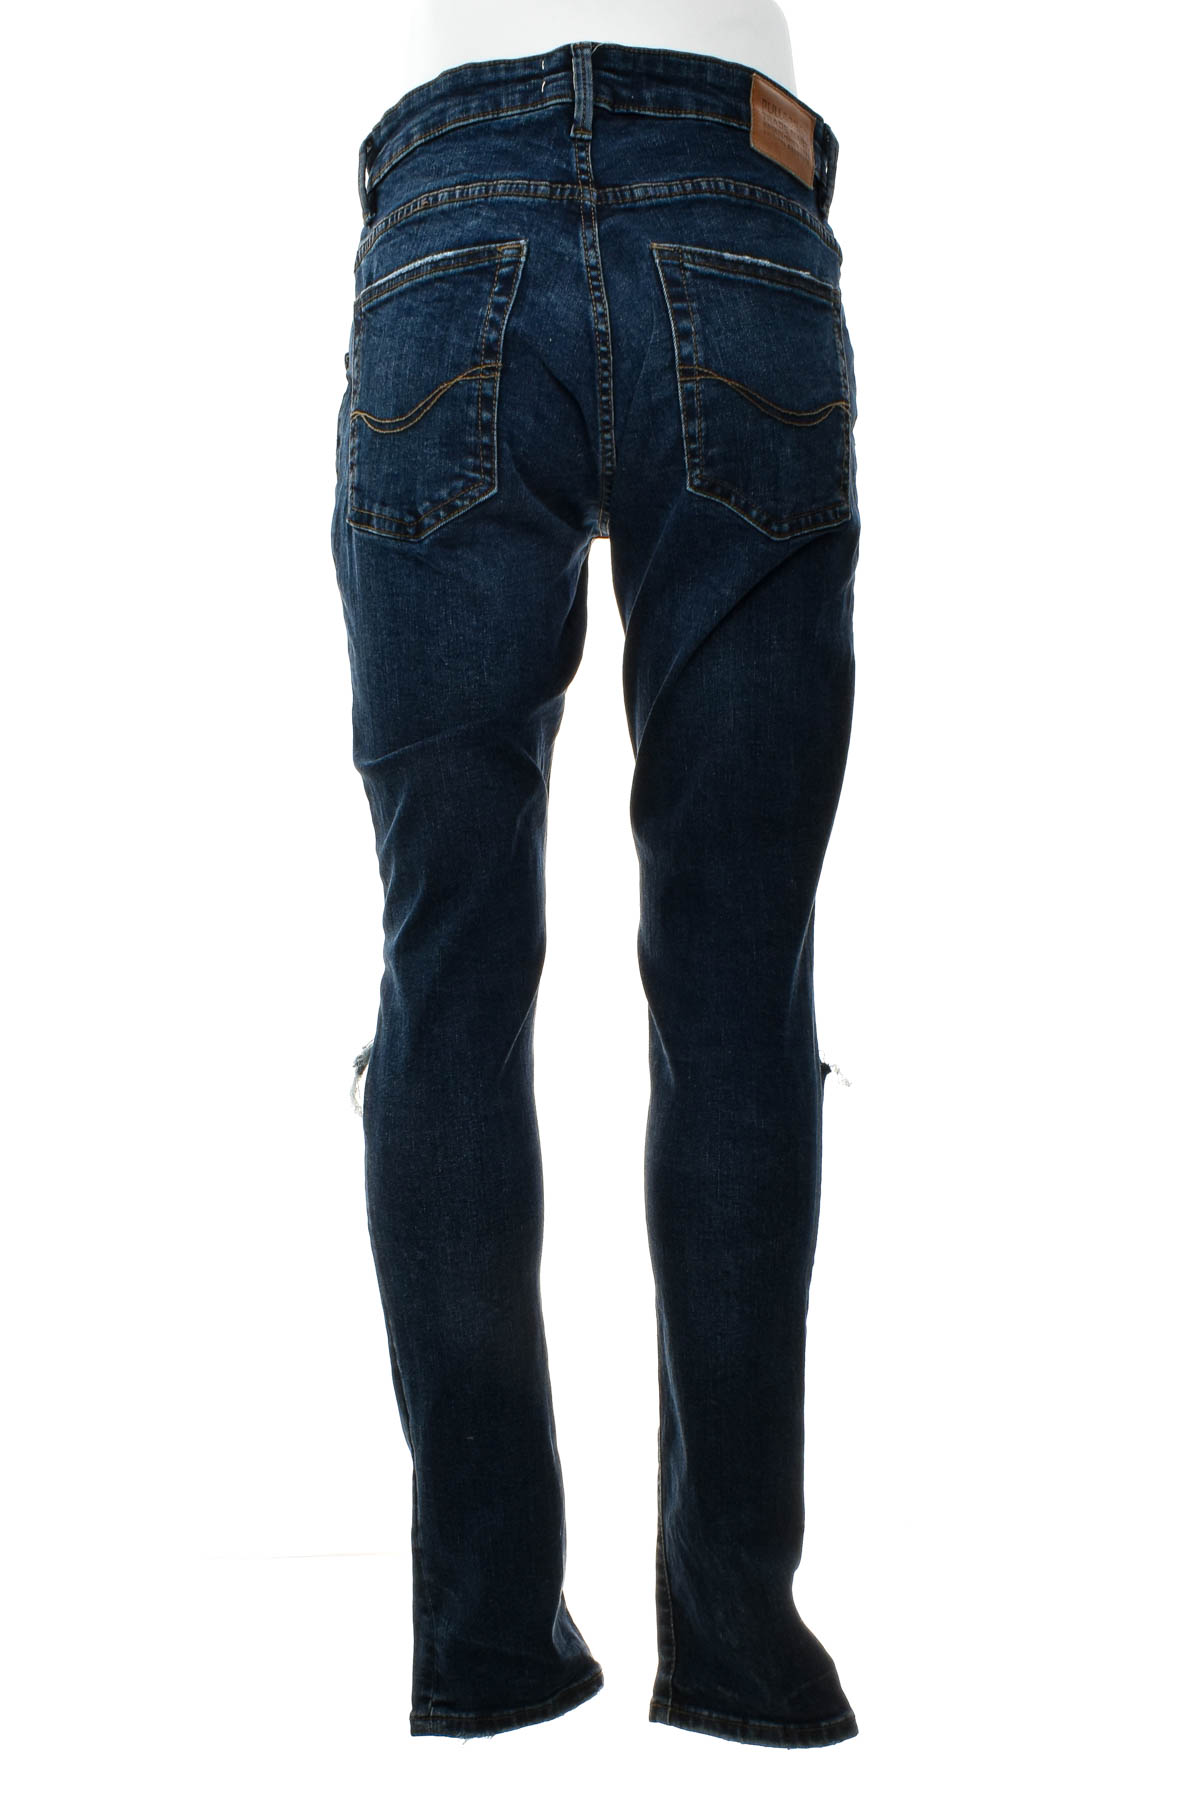 Men's jeans - Pull & Bear - 1